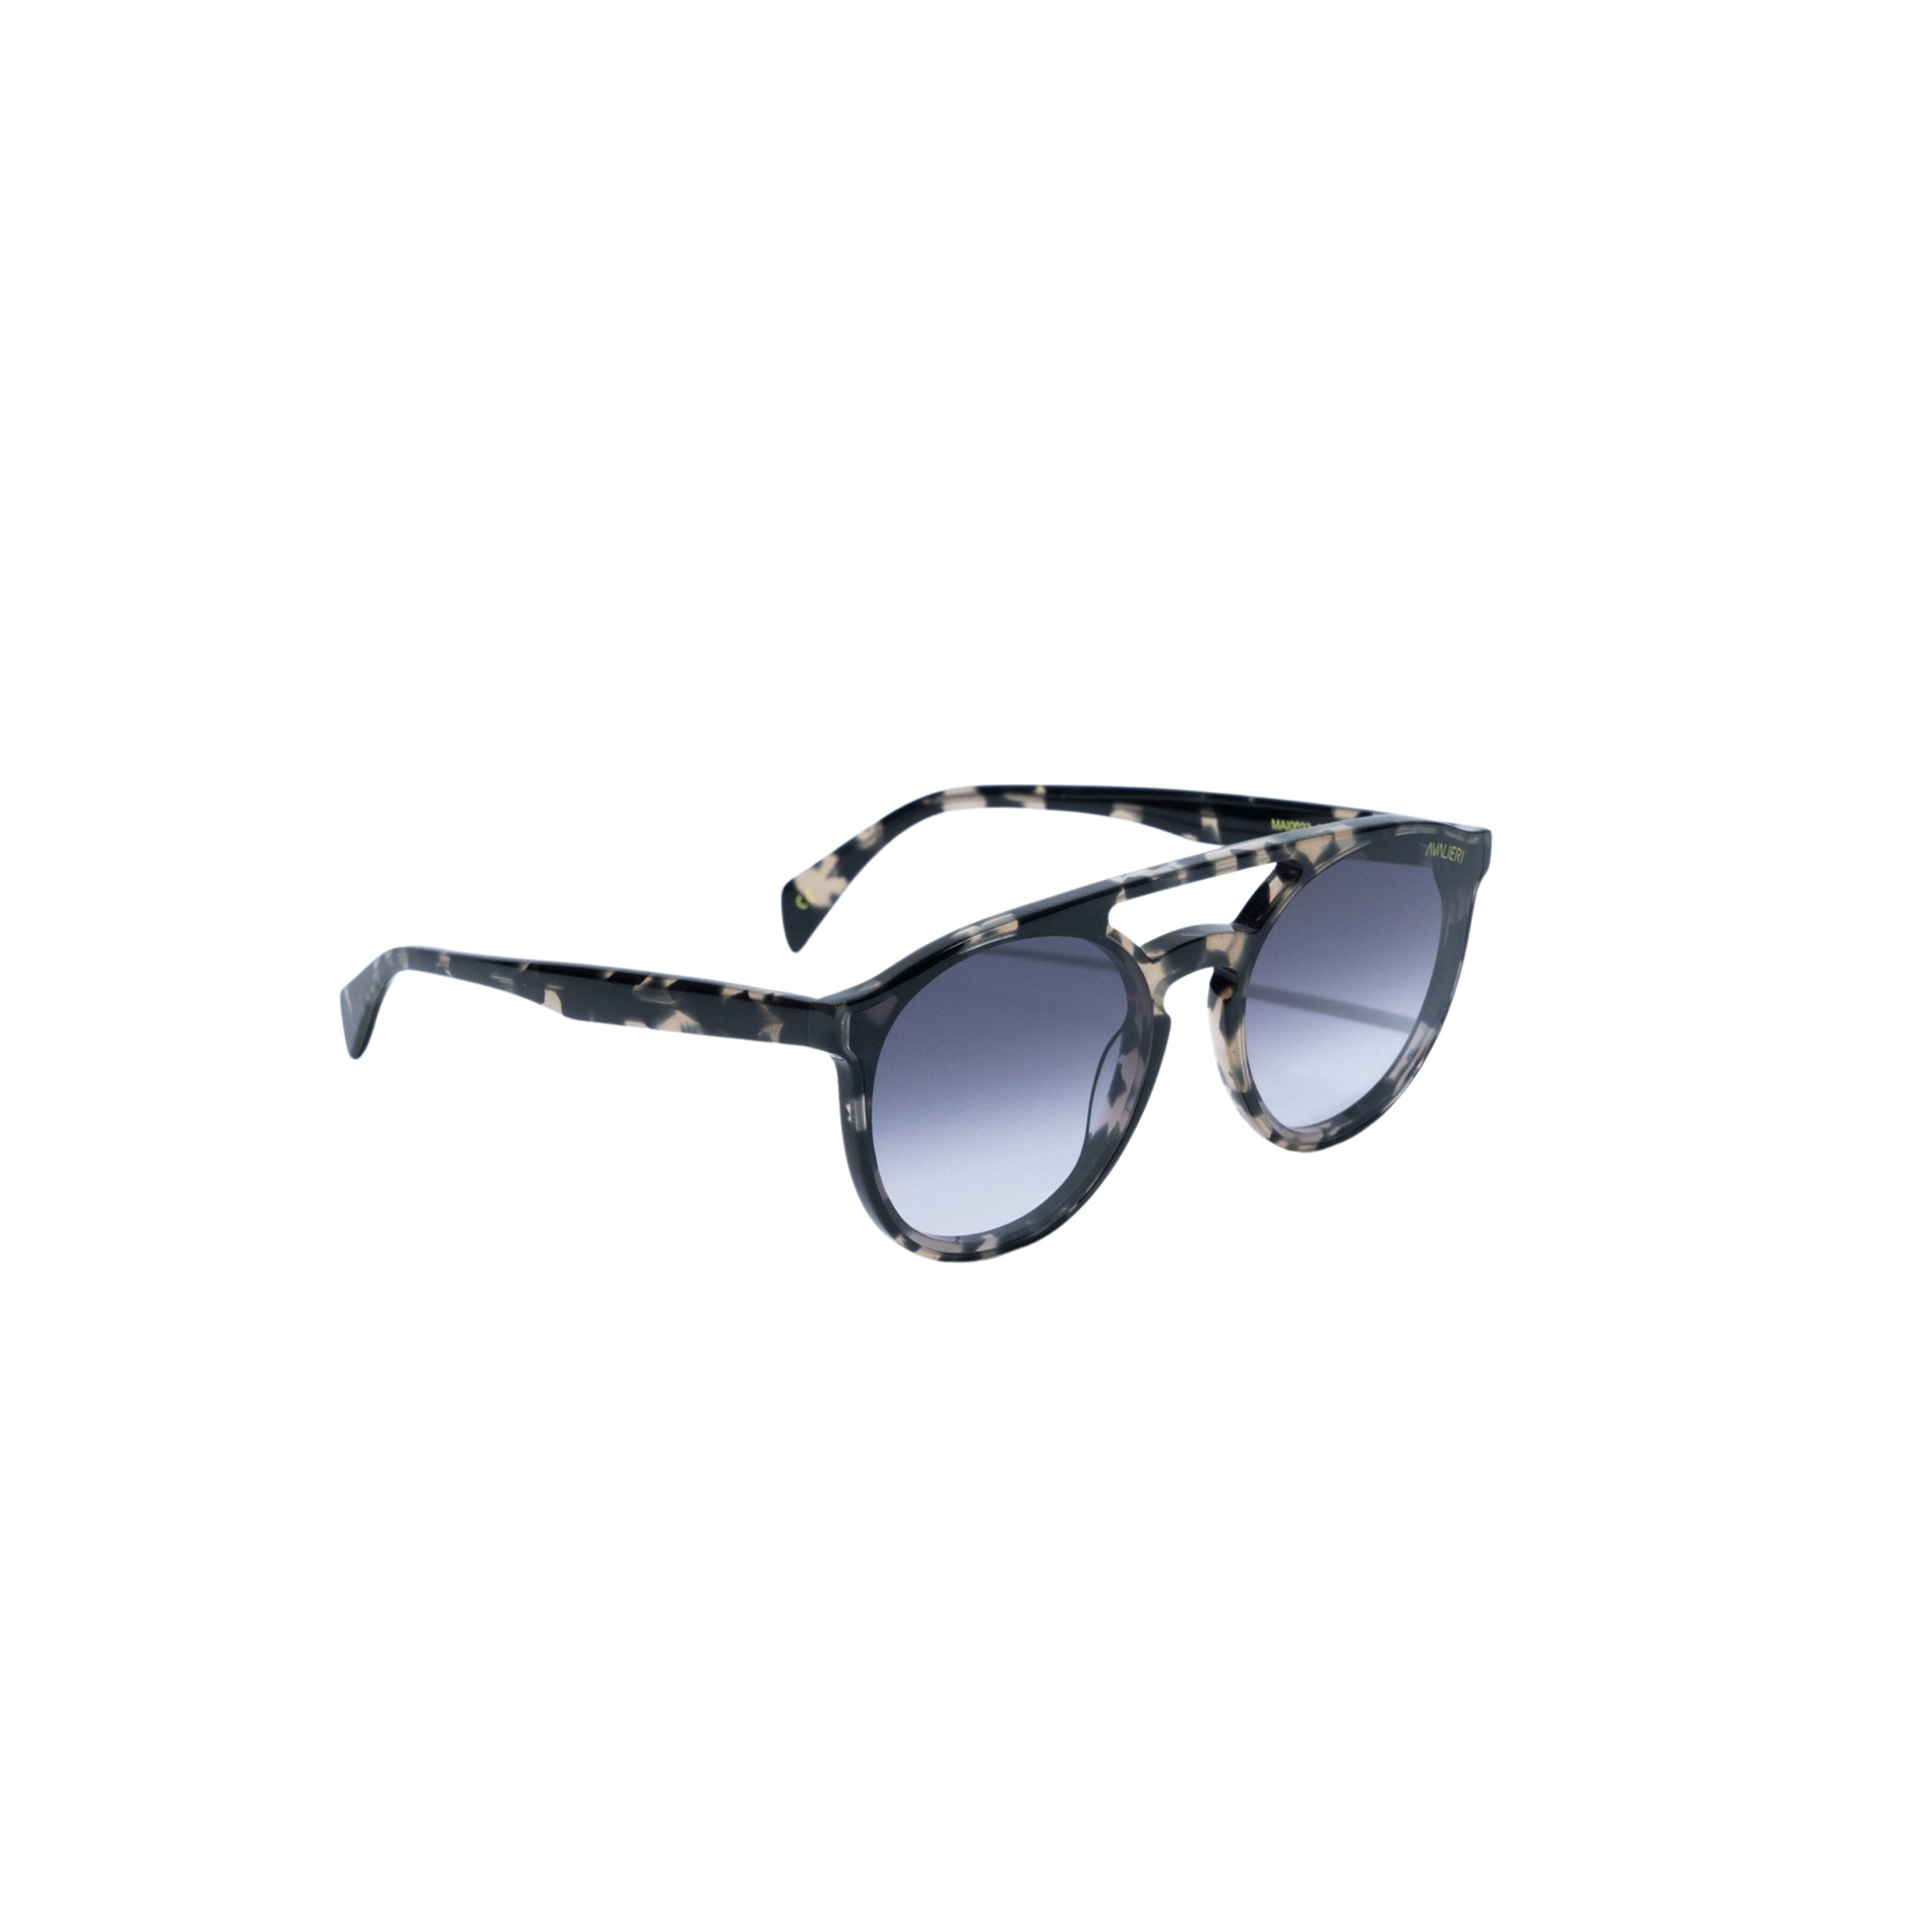 Avalieri Brown Sunglasses for Men and Women - AVSG-0007